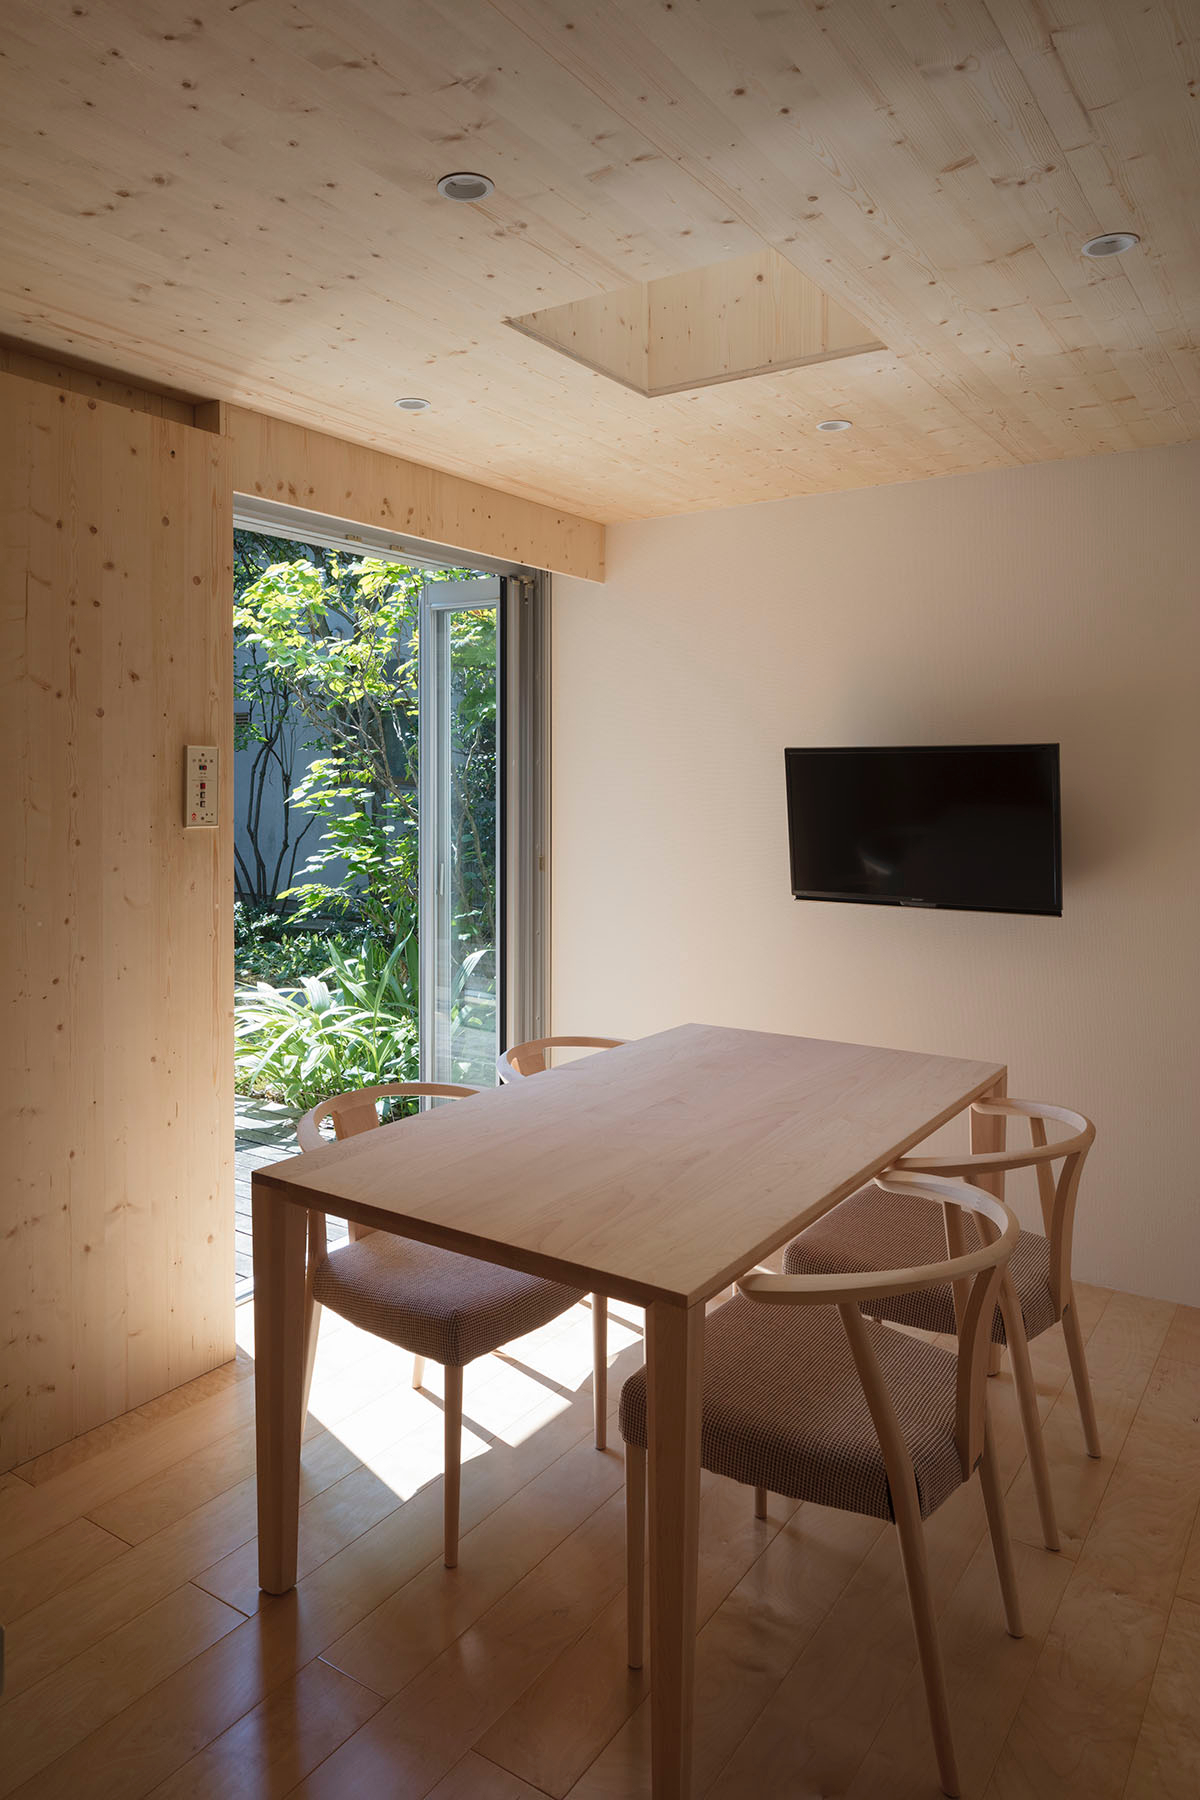 “Ngôi nhà tấm liên tục” - ứng dụng tuyệt vời với gỗ CLT | F.A.D.S